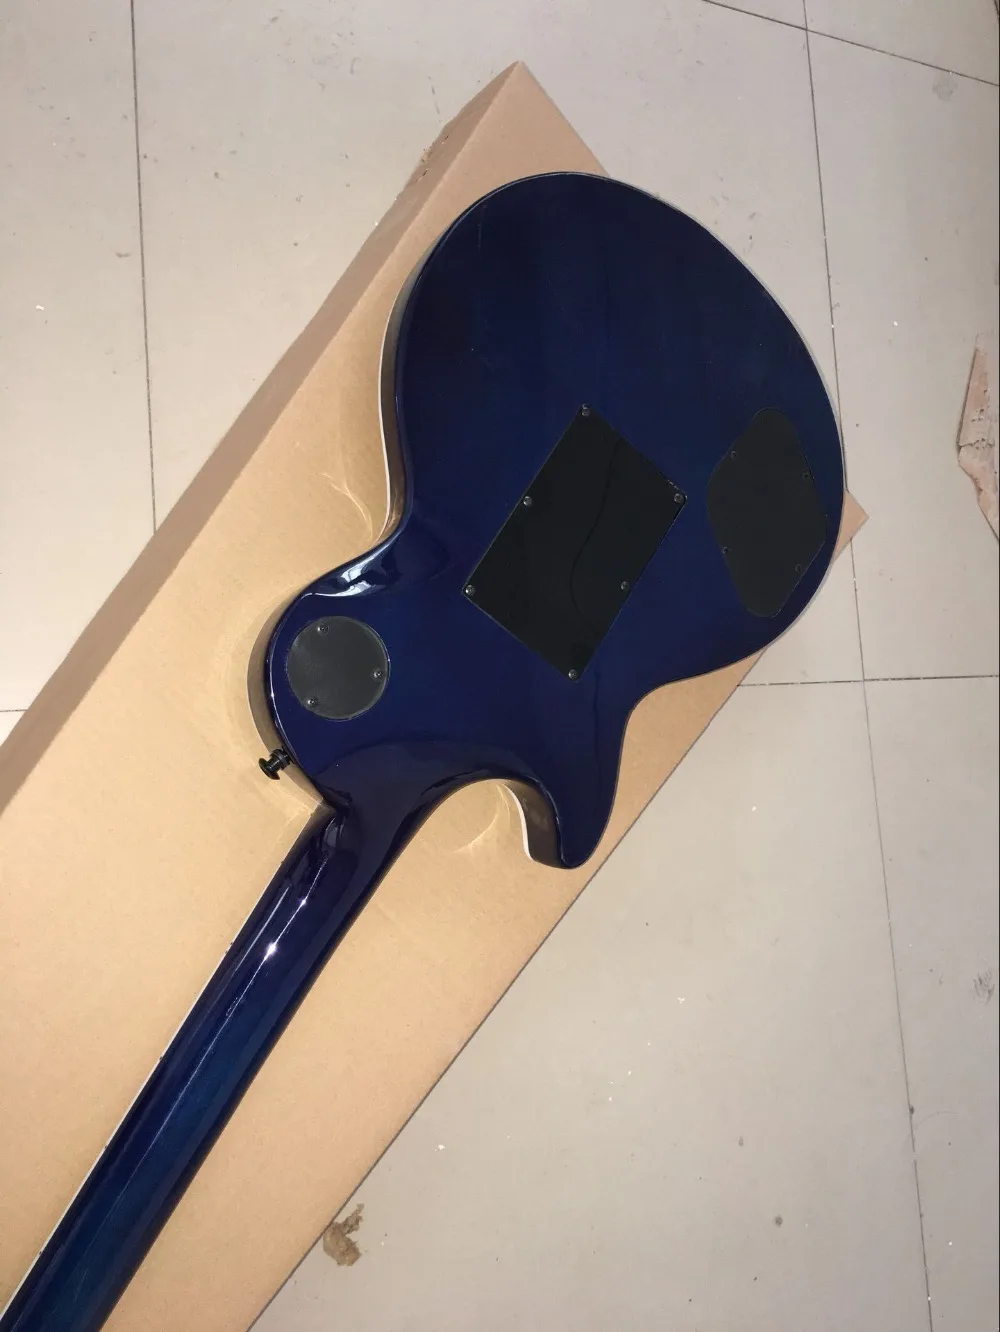 Пользовательский магазин, стандартная электрическая гитара blue color flame top на заказ, ручная работа, 6 выступлений gitaar, фингерборд из палисандра ra